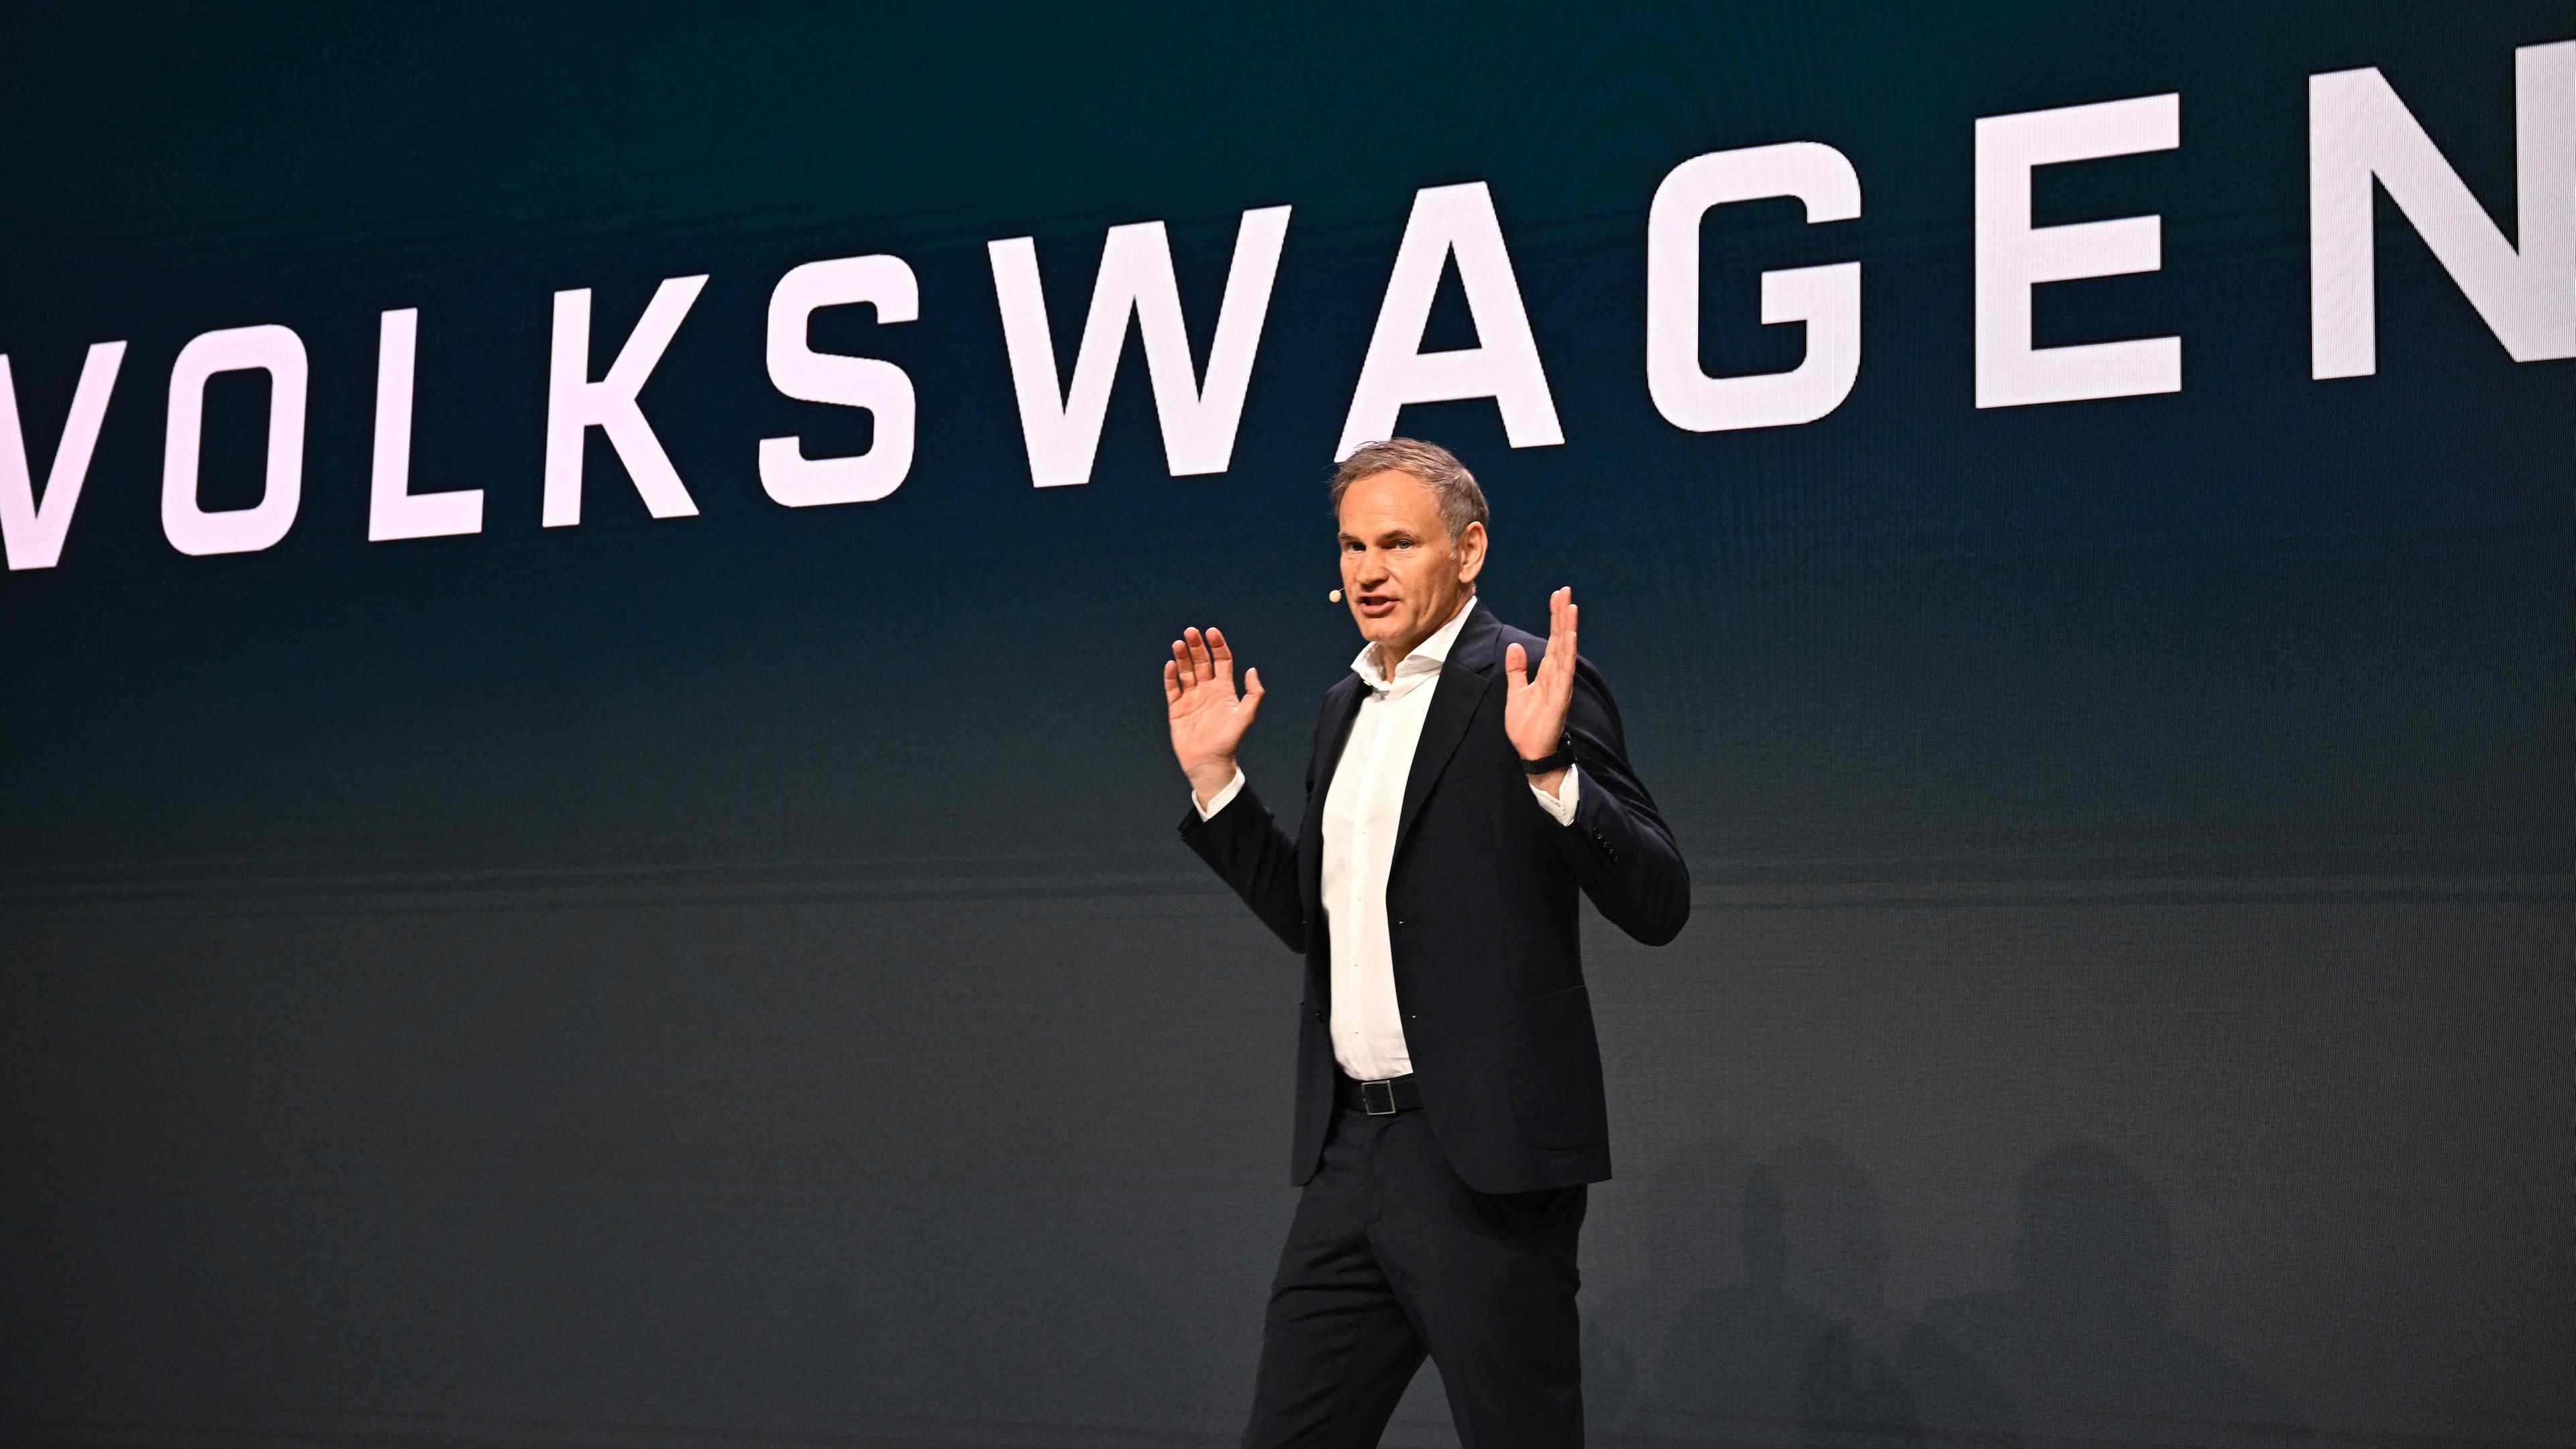 VW-Chef Oliver Blume vor auf Bühne, im Hintergrund groß zu lesen: "Volkswagen"